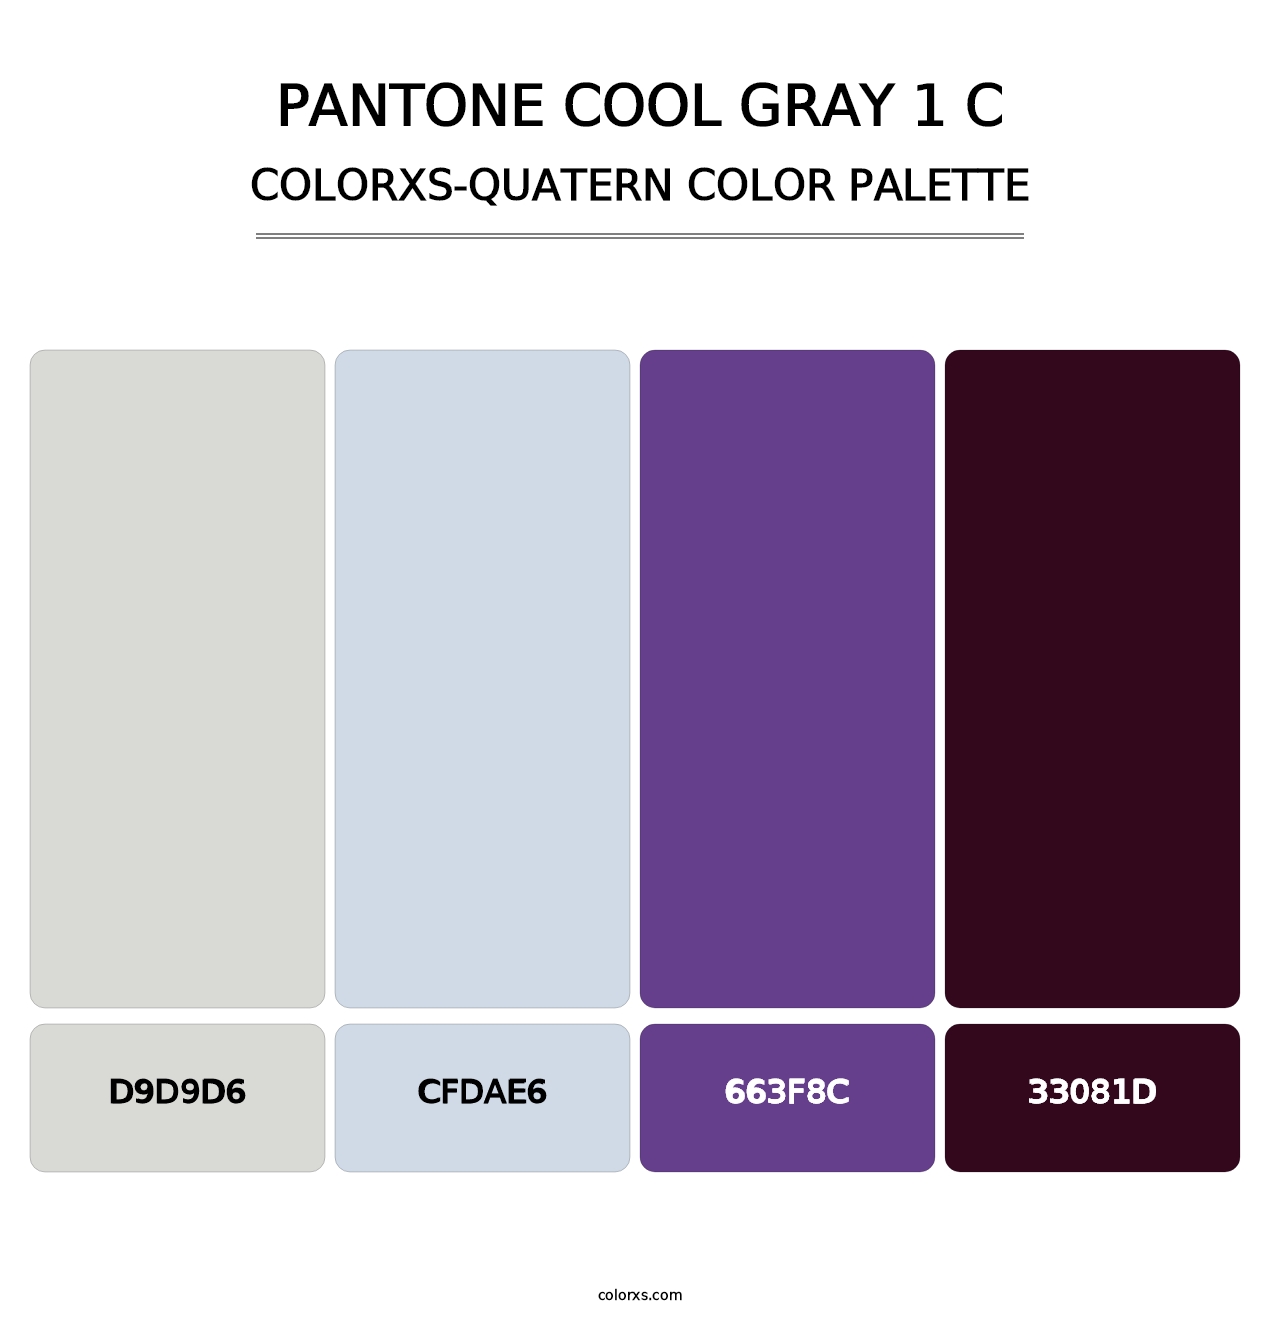 PANTONE Cool Gray 1 C - Colorxs Quatern Palette